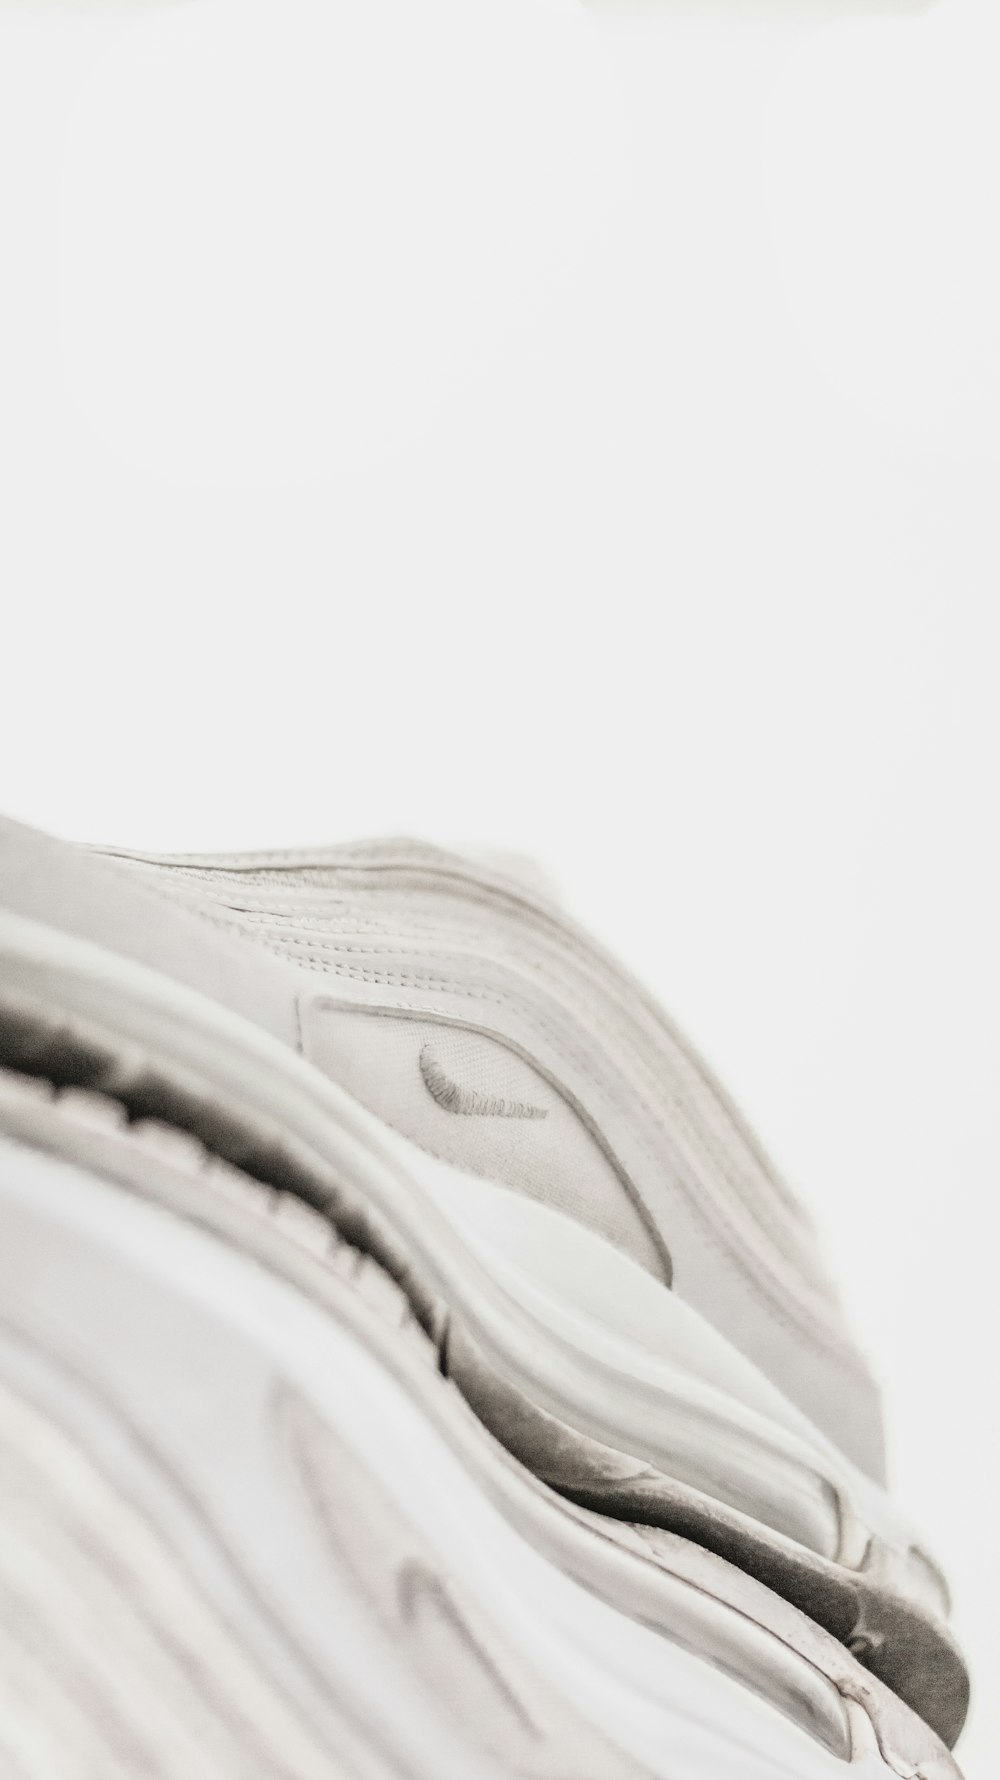 Zapatillas deportivas Nike blancas y grises